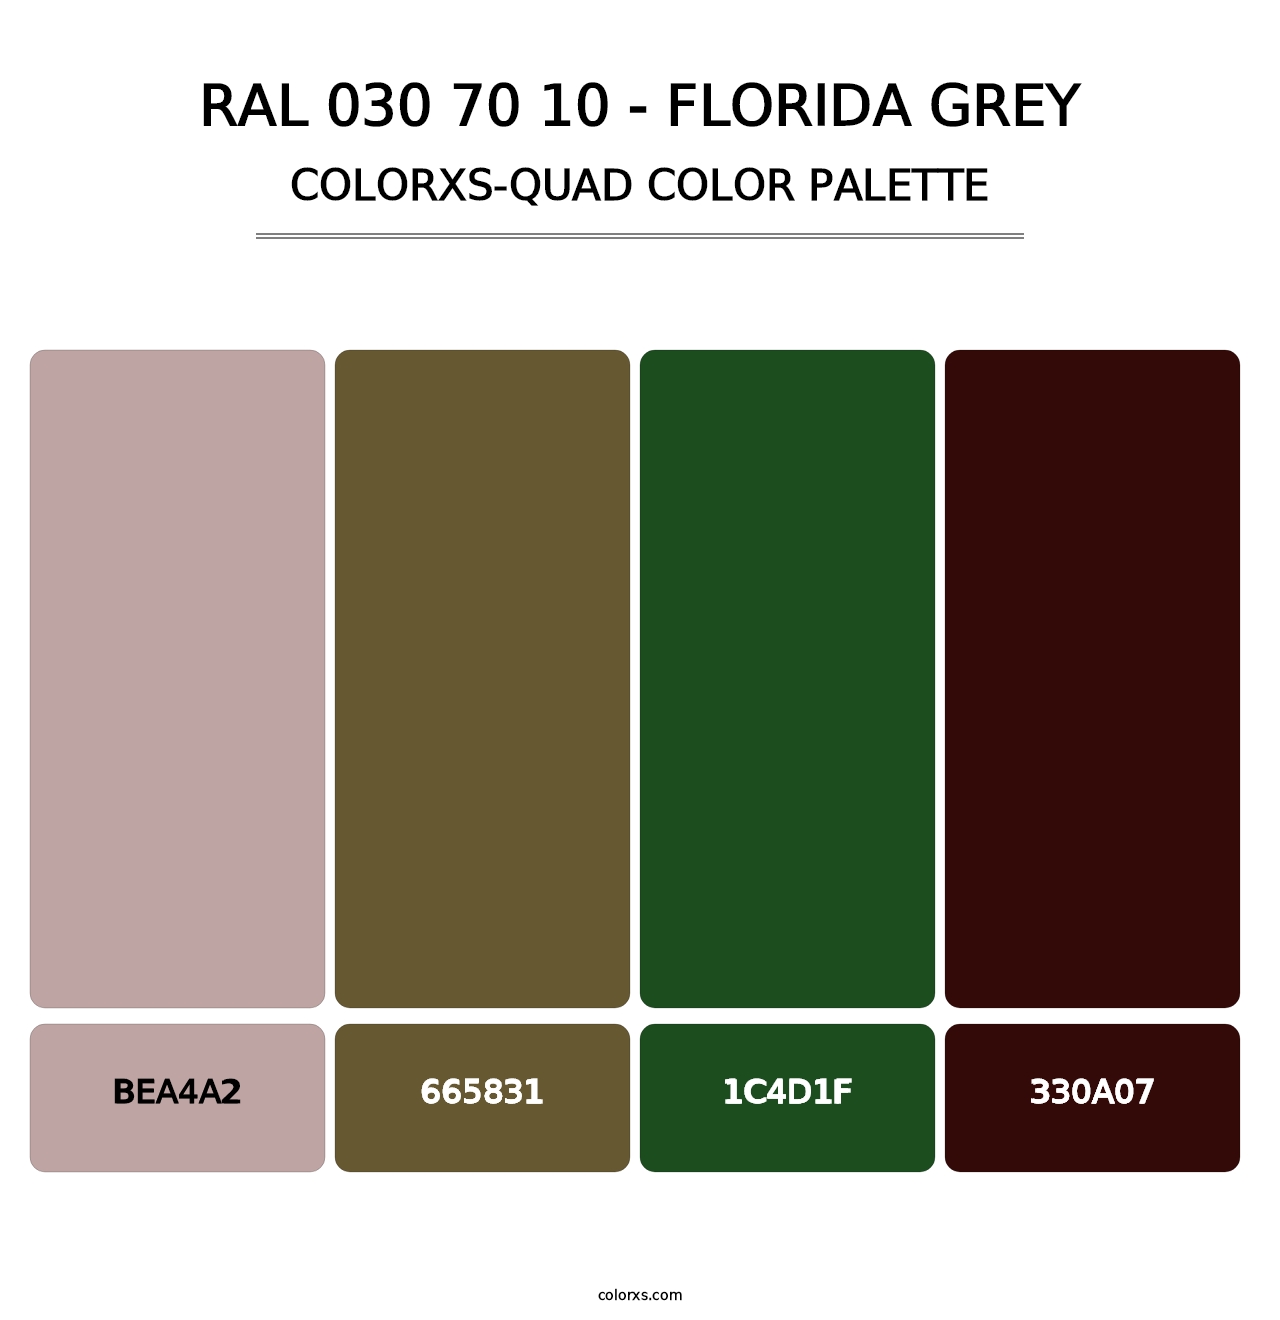 RAL 030 70 10 - Florida Grey - Colorxs Quad Palette